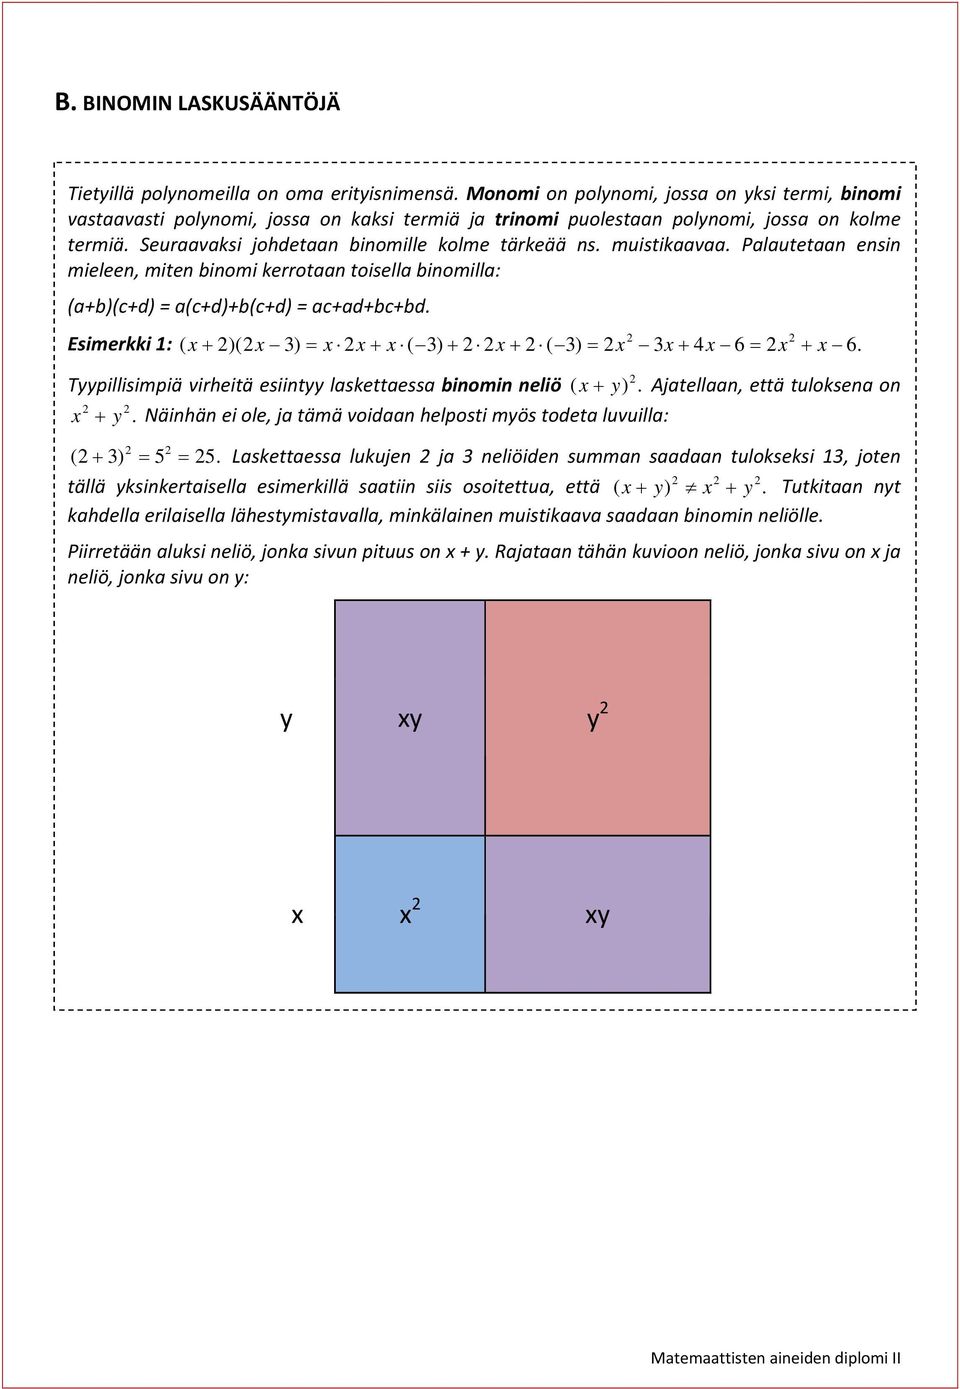 Plutetn ensin mieleen, miten binomi kerrotn toisell binomill: (+b)(c+d) = (c+d)+b(c+d) = c+d+bc+bd. Esimerkki 1: ( x )(x 3) x x x ( 3) x ( 3) x 3x 4x 6 x x 6.